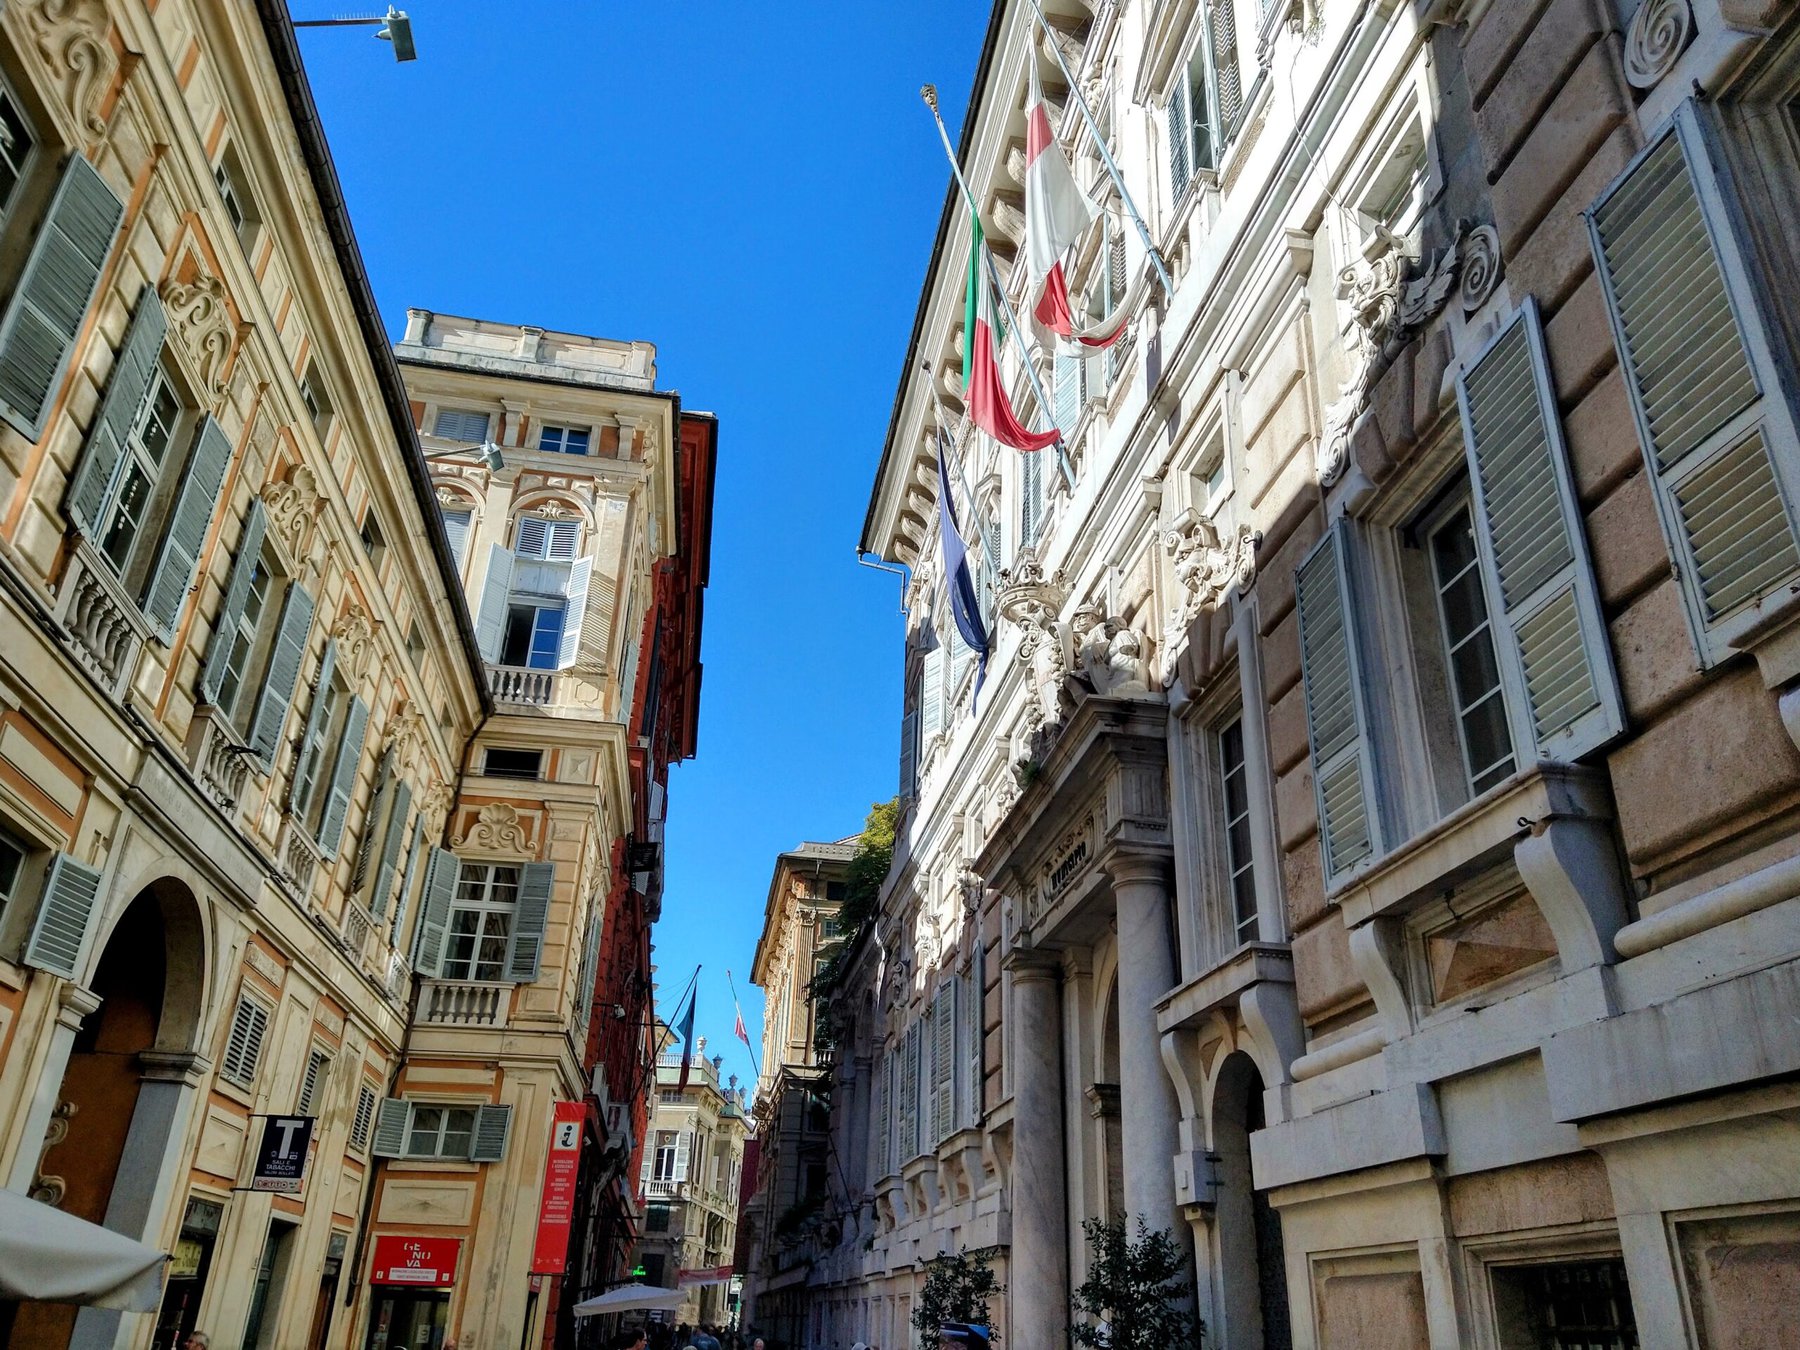 Genoa, Italy from the street.